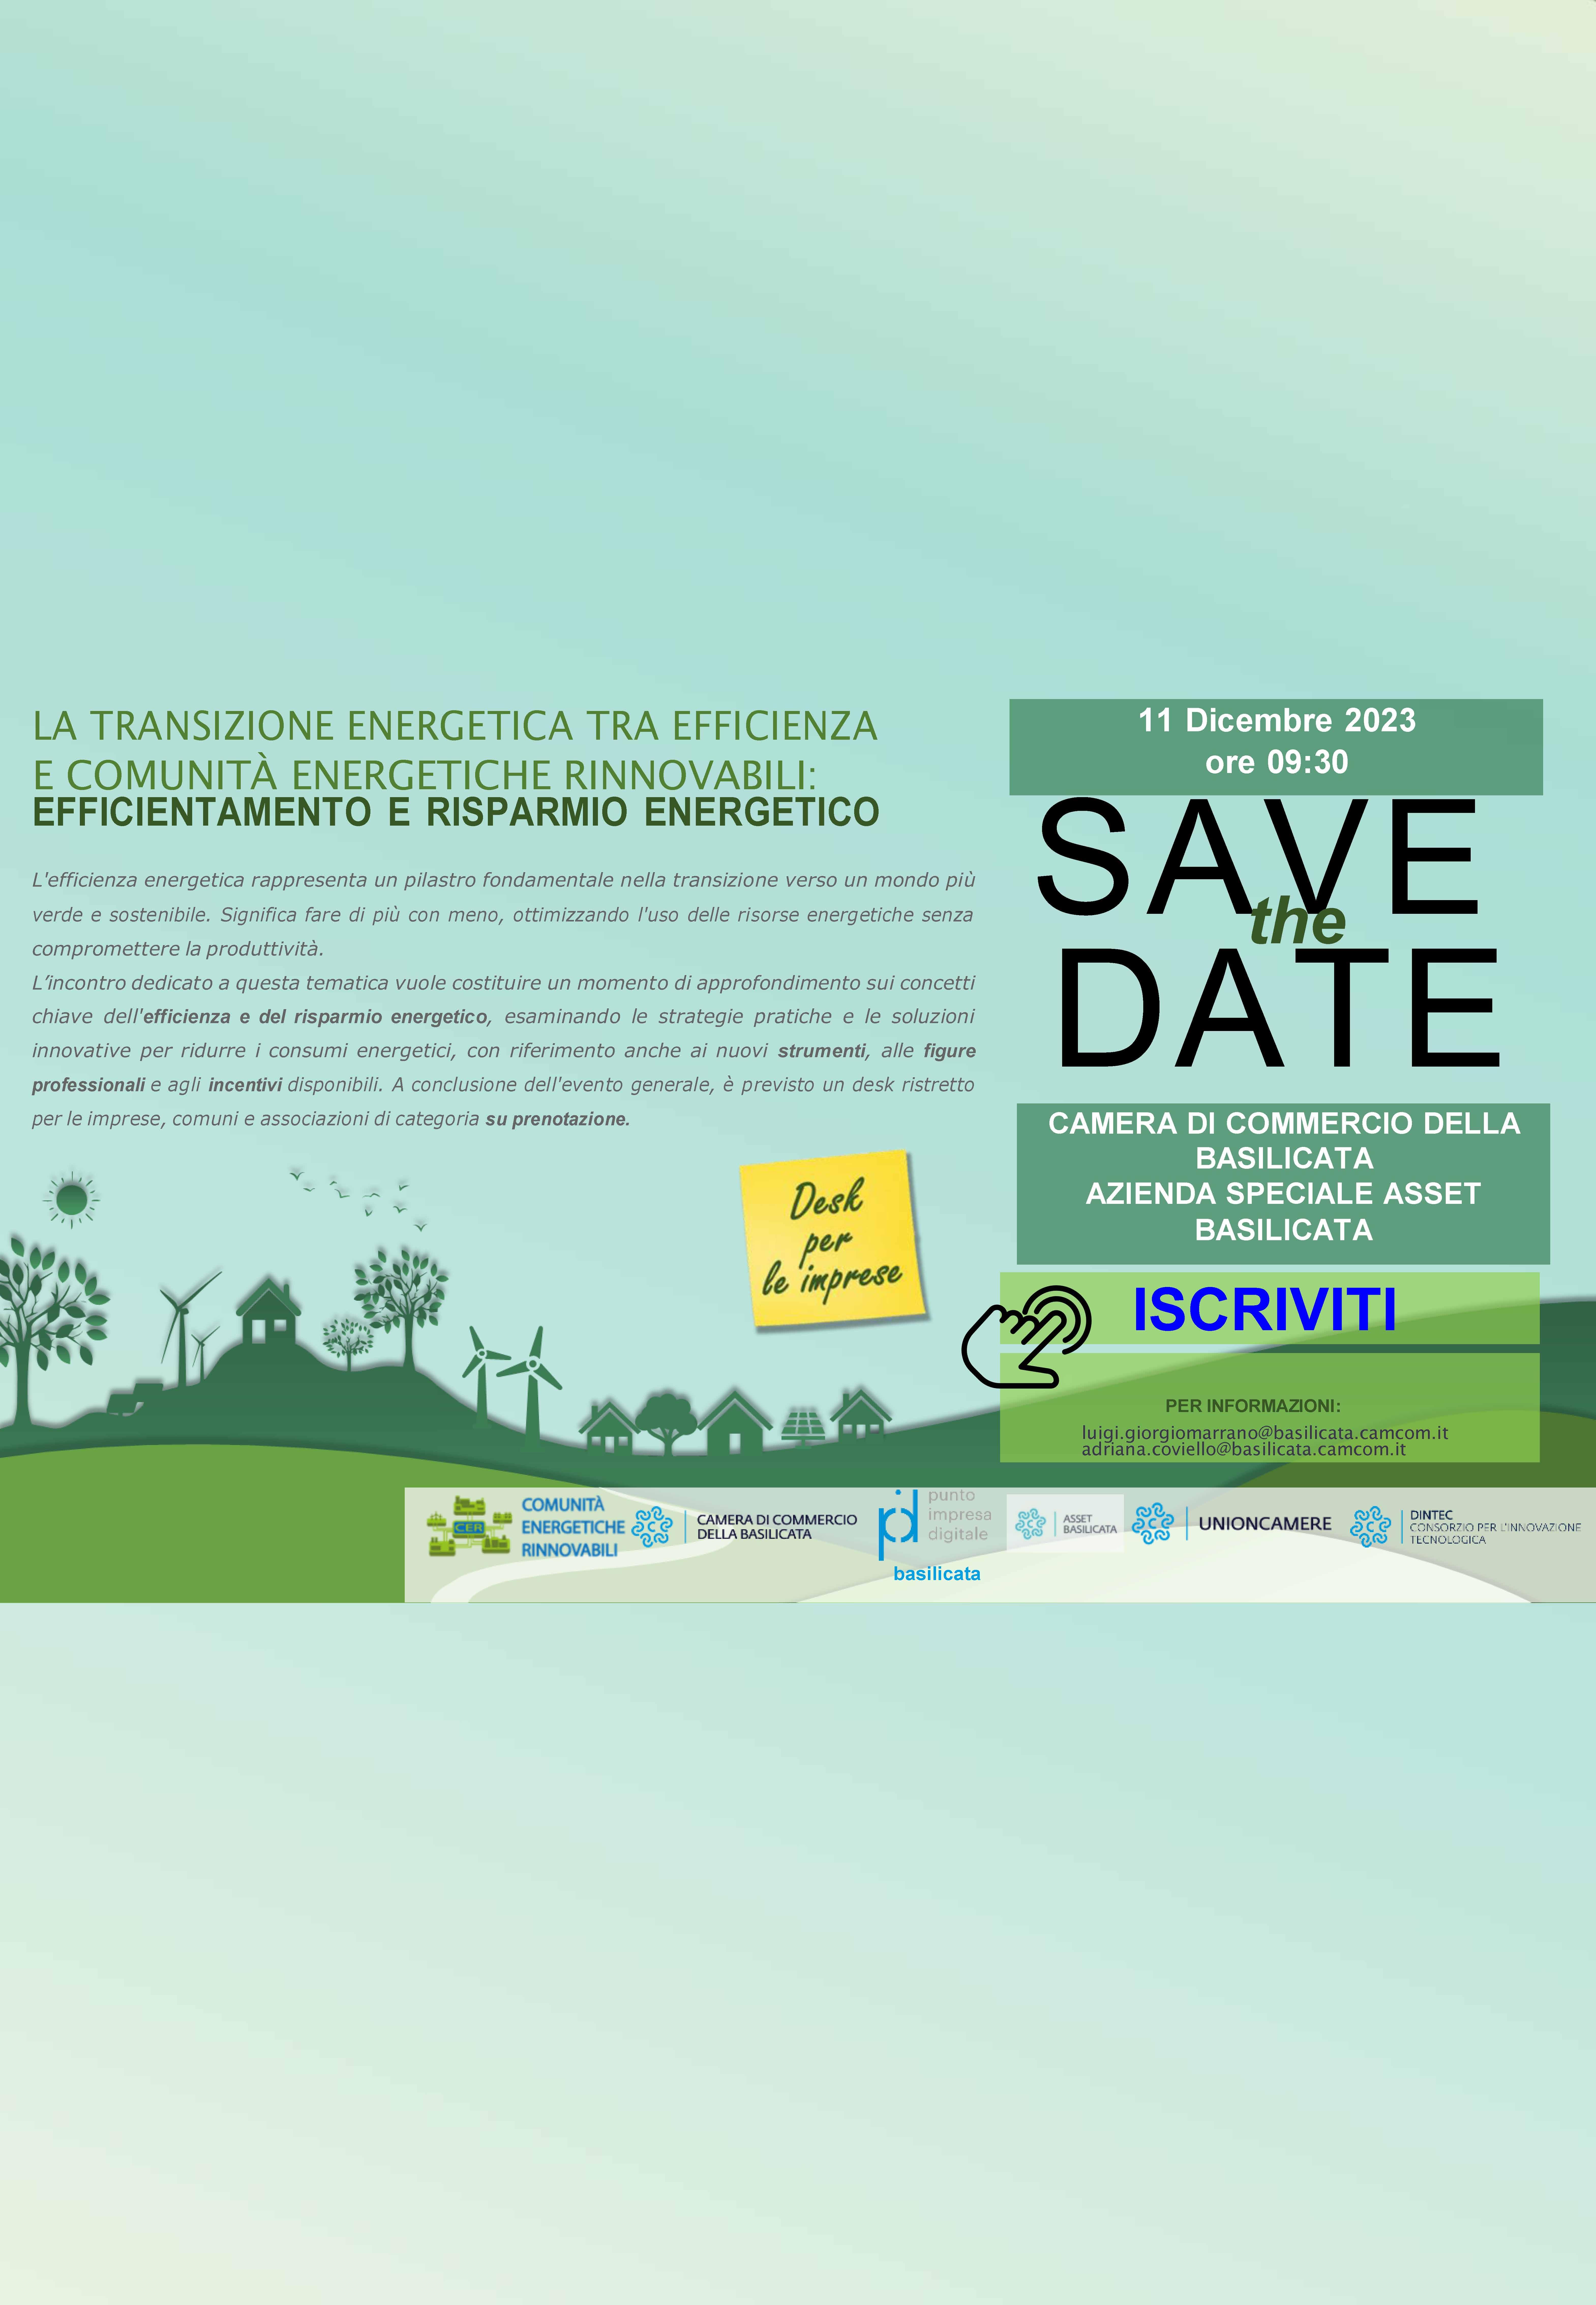 Webinar e Desk informativi su “La transizione energetica tra efficienza e comunità energetiche rinnovabili: efficientamento e risparmio energetico” - 11 dicembre 2023